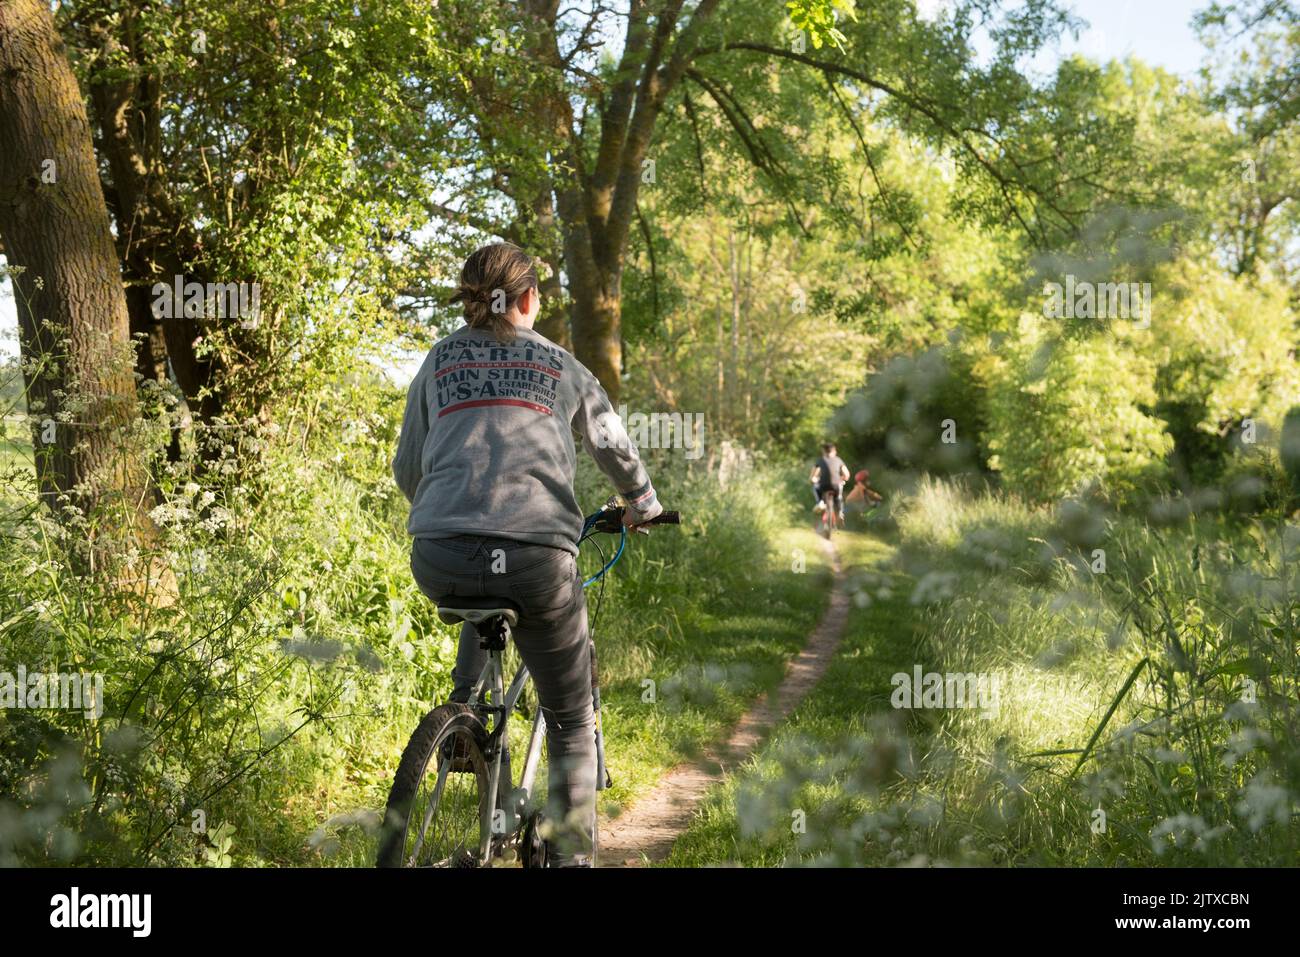 Cycliste sur un petit sentier de campagne borde d'ombelliferes en lisiere de foret, Departement d'Eure-et-Loir, region Centre-Val-de-Loire, France, Stock Photo